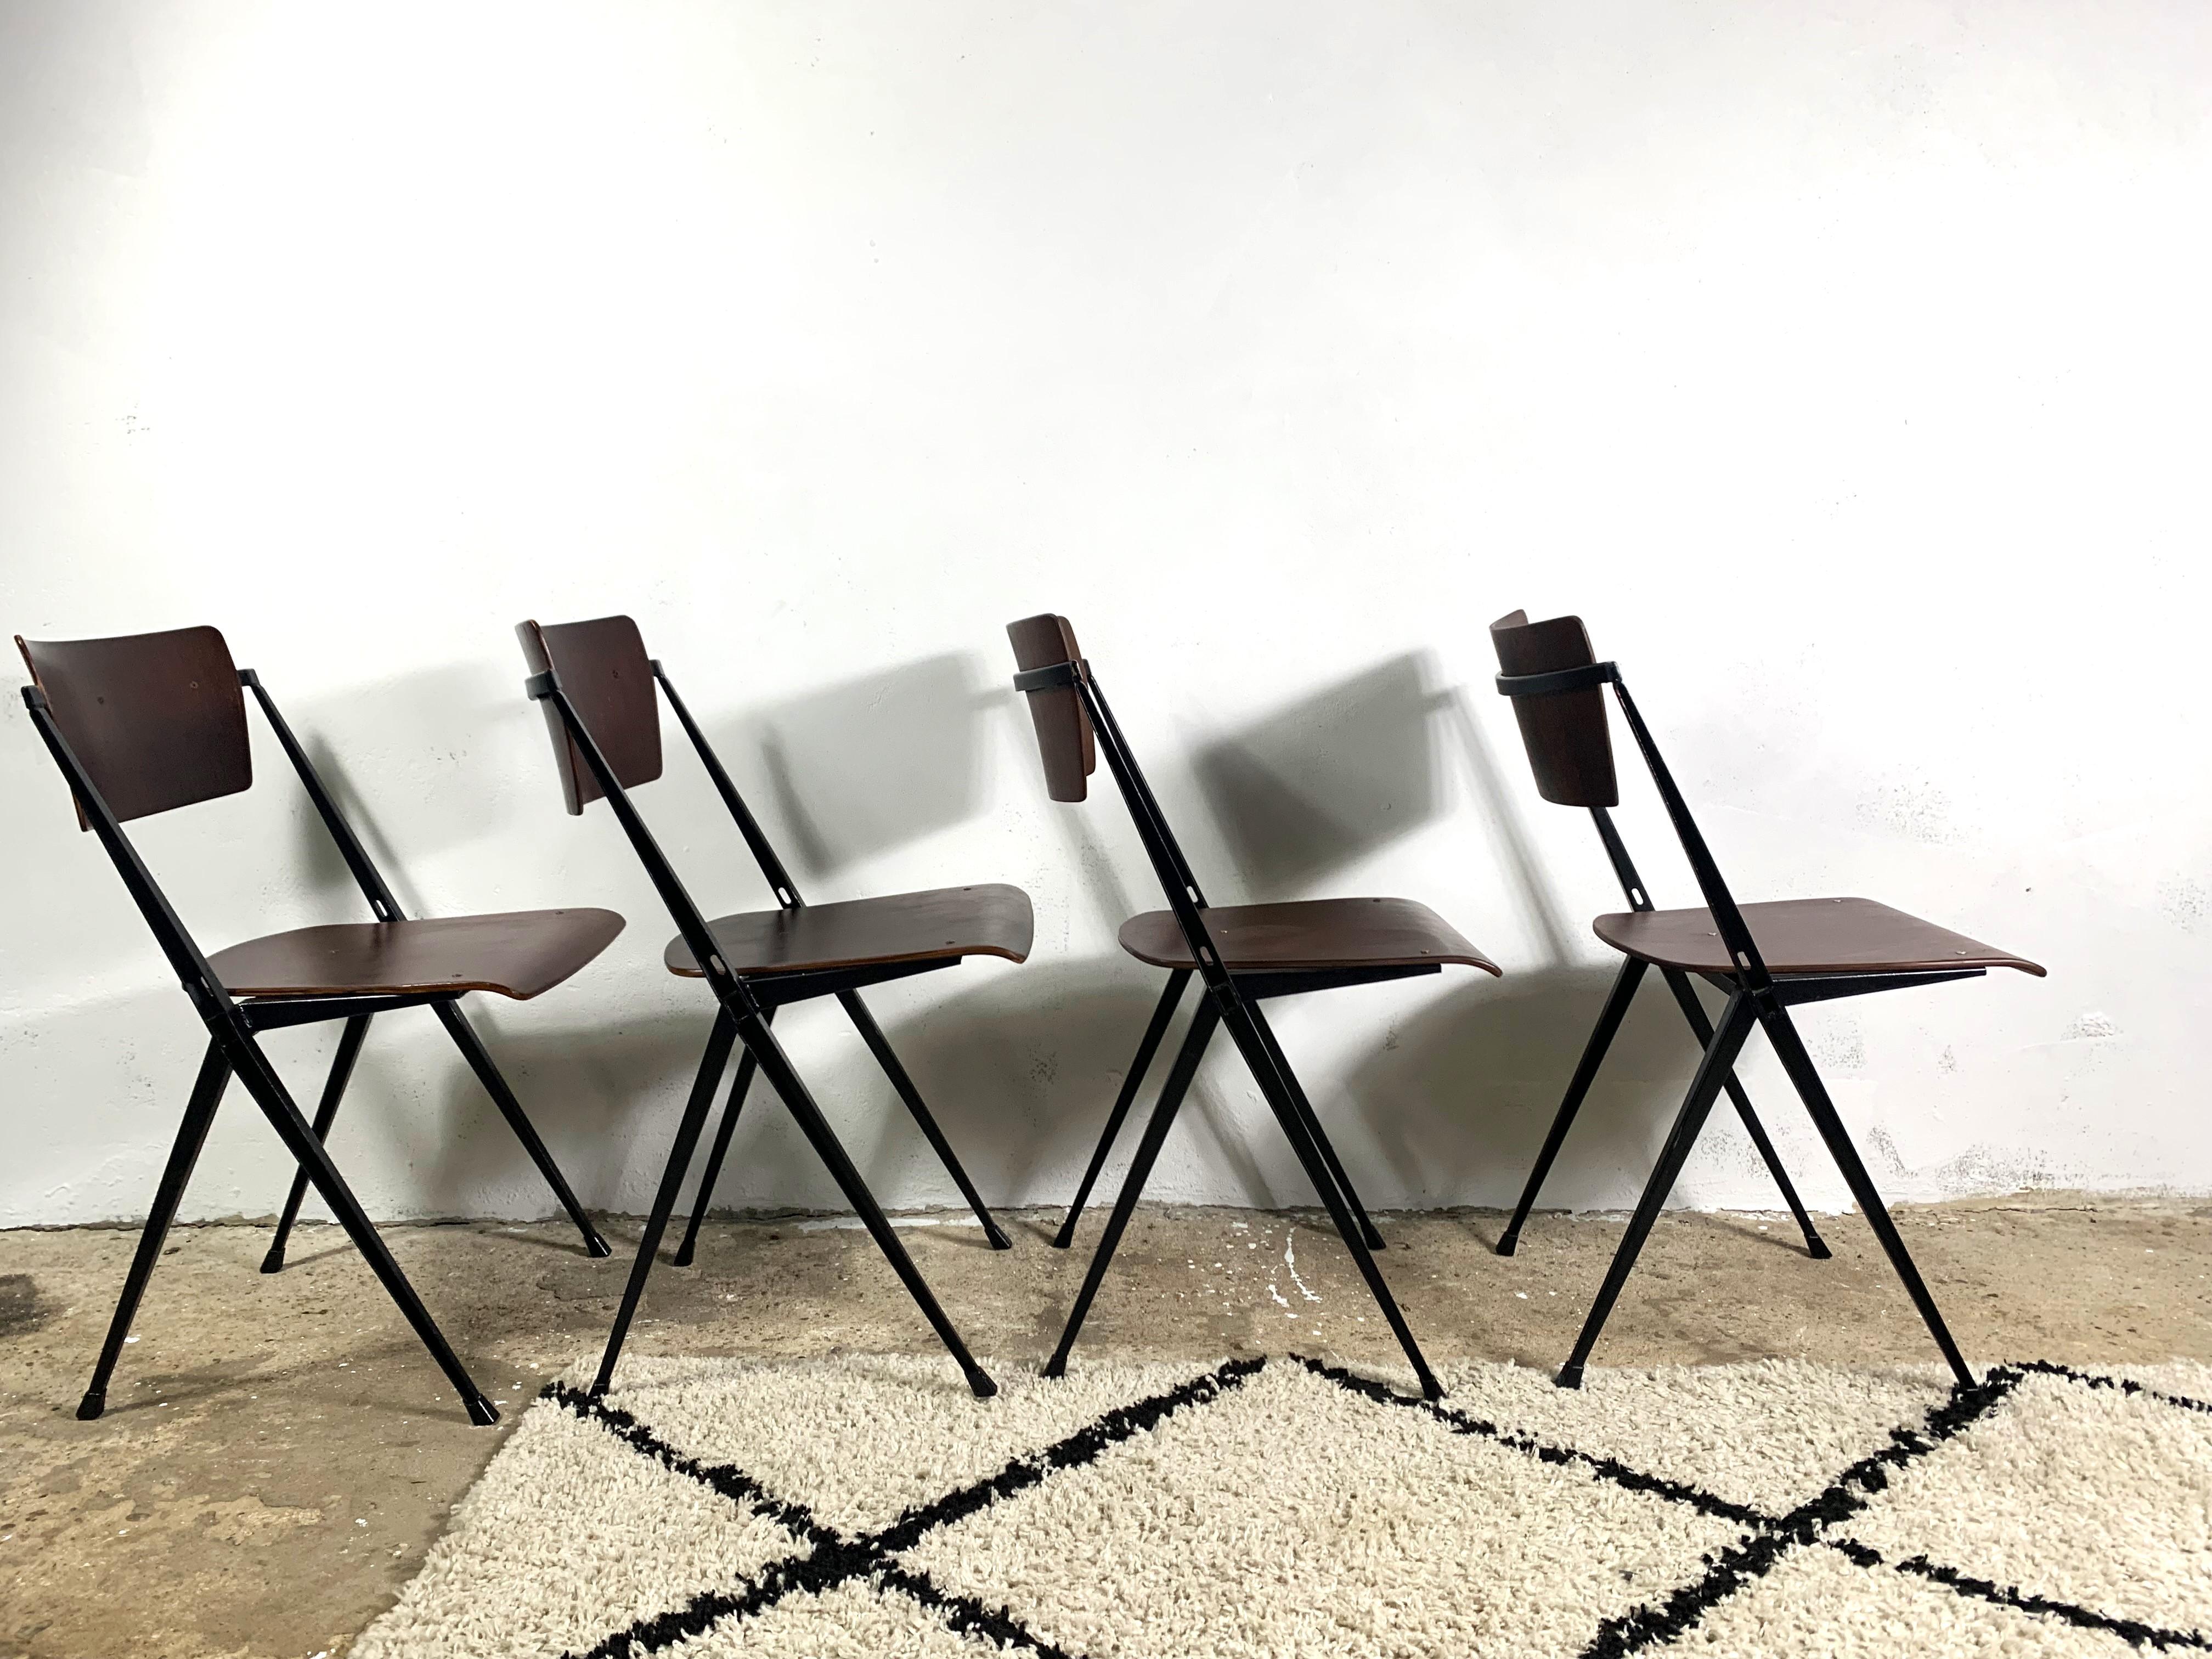 Les chaises pyramidales ont été conçues par Wim Rietveld (fils de Gerrit Rietveld) au début des années 1960 comme chaises d'école. La série appelée Calle comprenait également des bureaux pour les élèves et des bureaux plus grands pour les